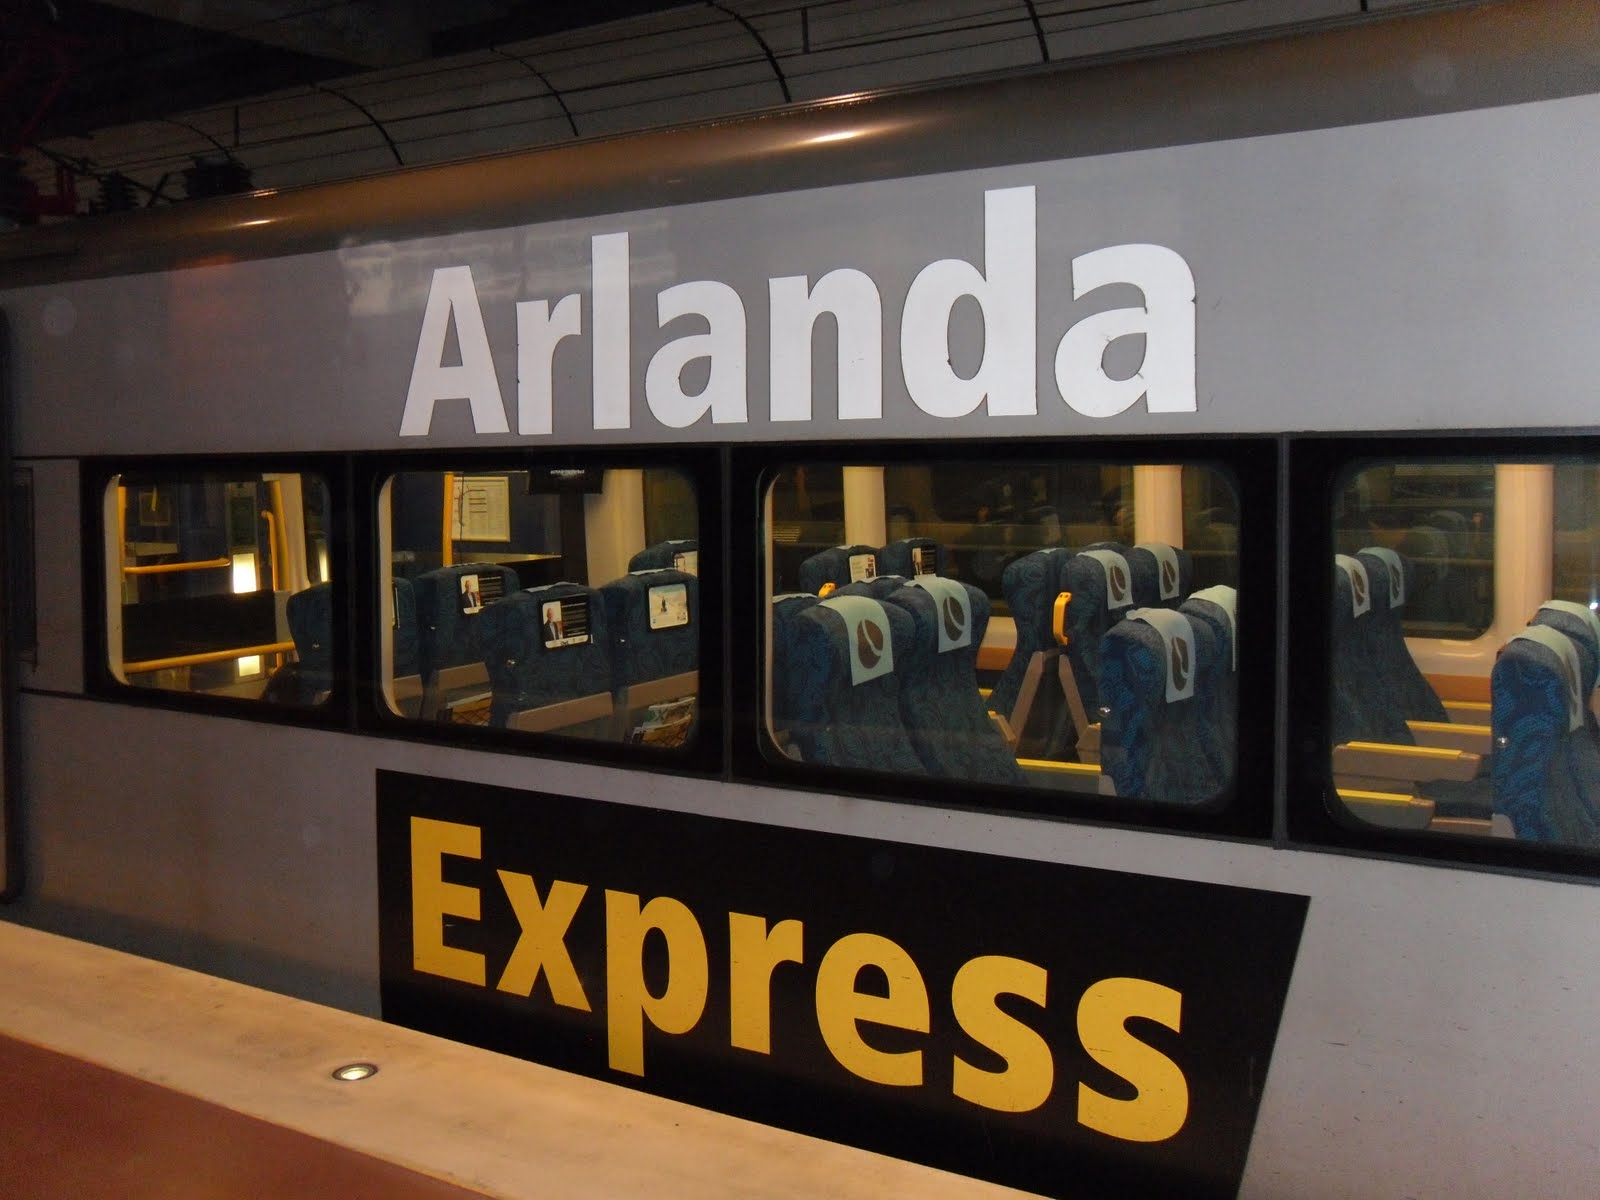 Tip #1 - The Arlanda Express